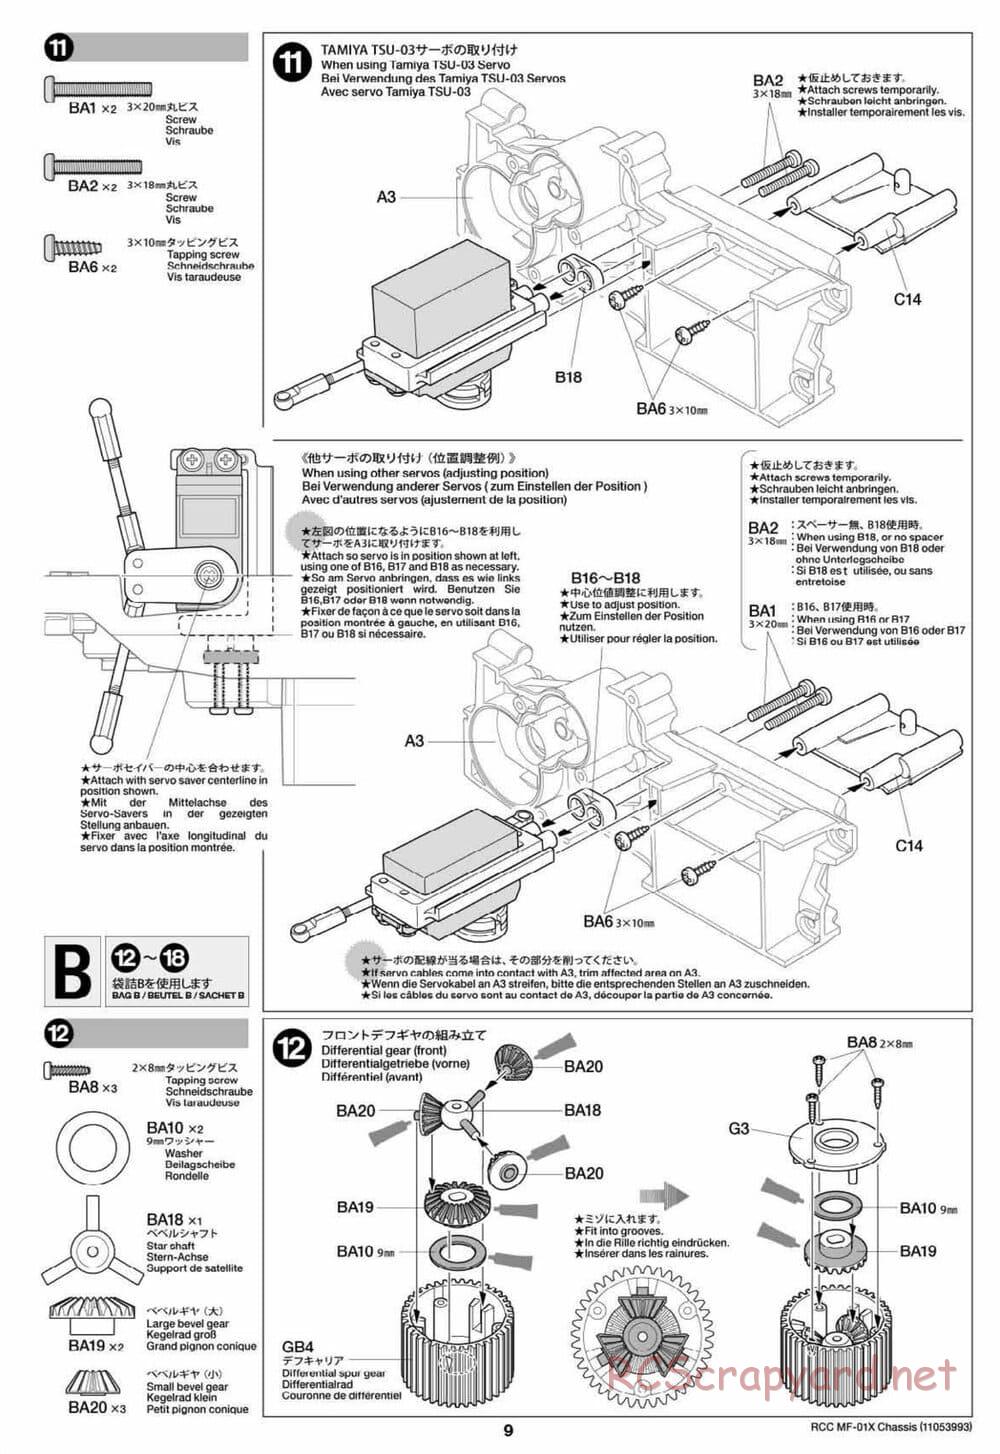 Tamiya - MF-01X Chassis - Manual - Page 9